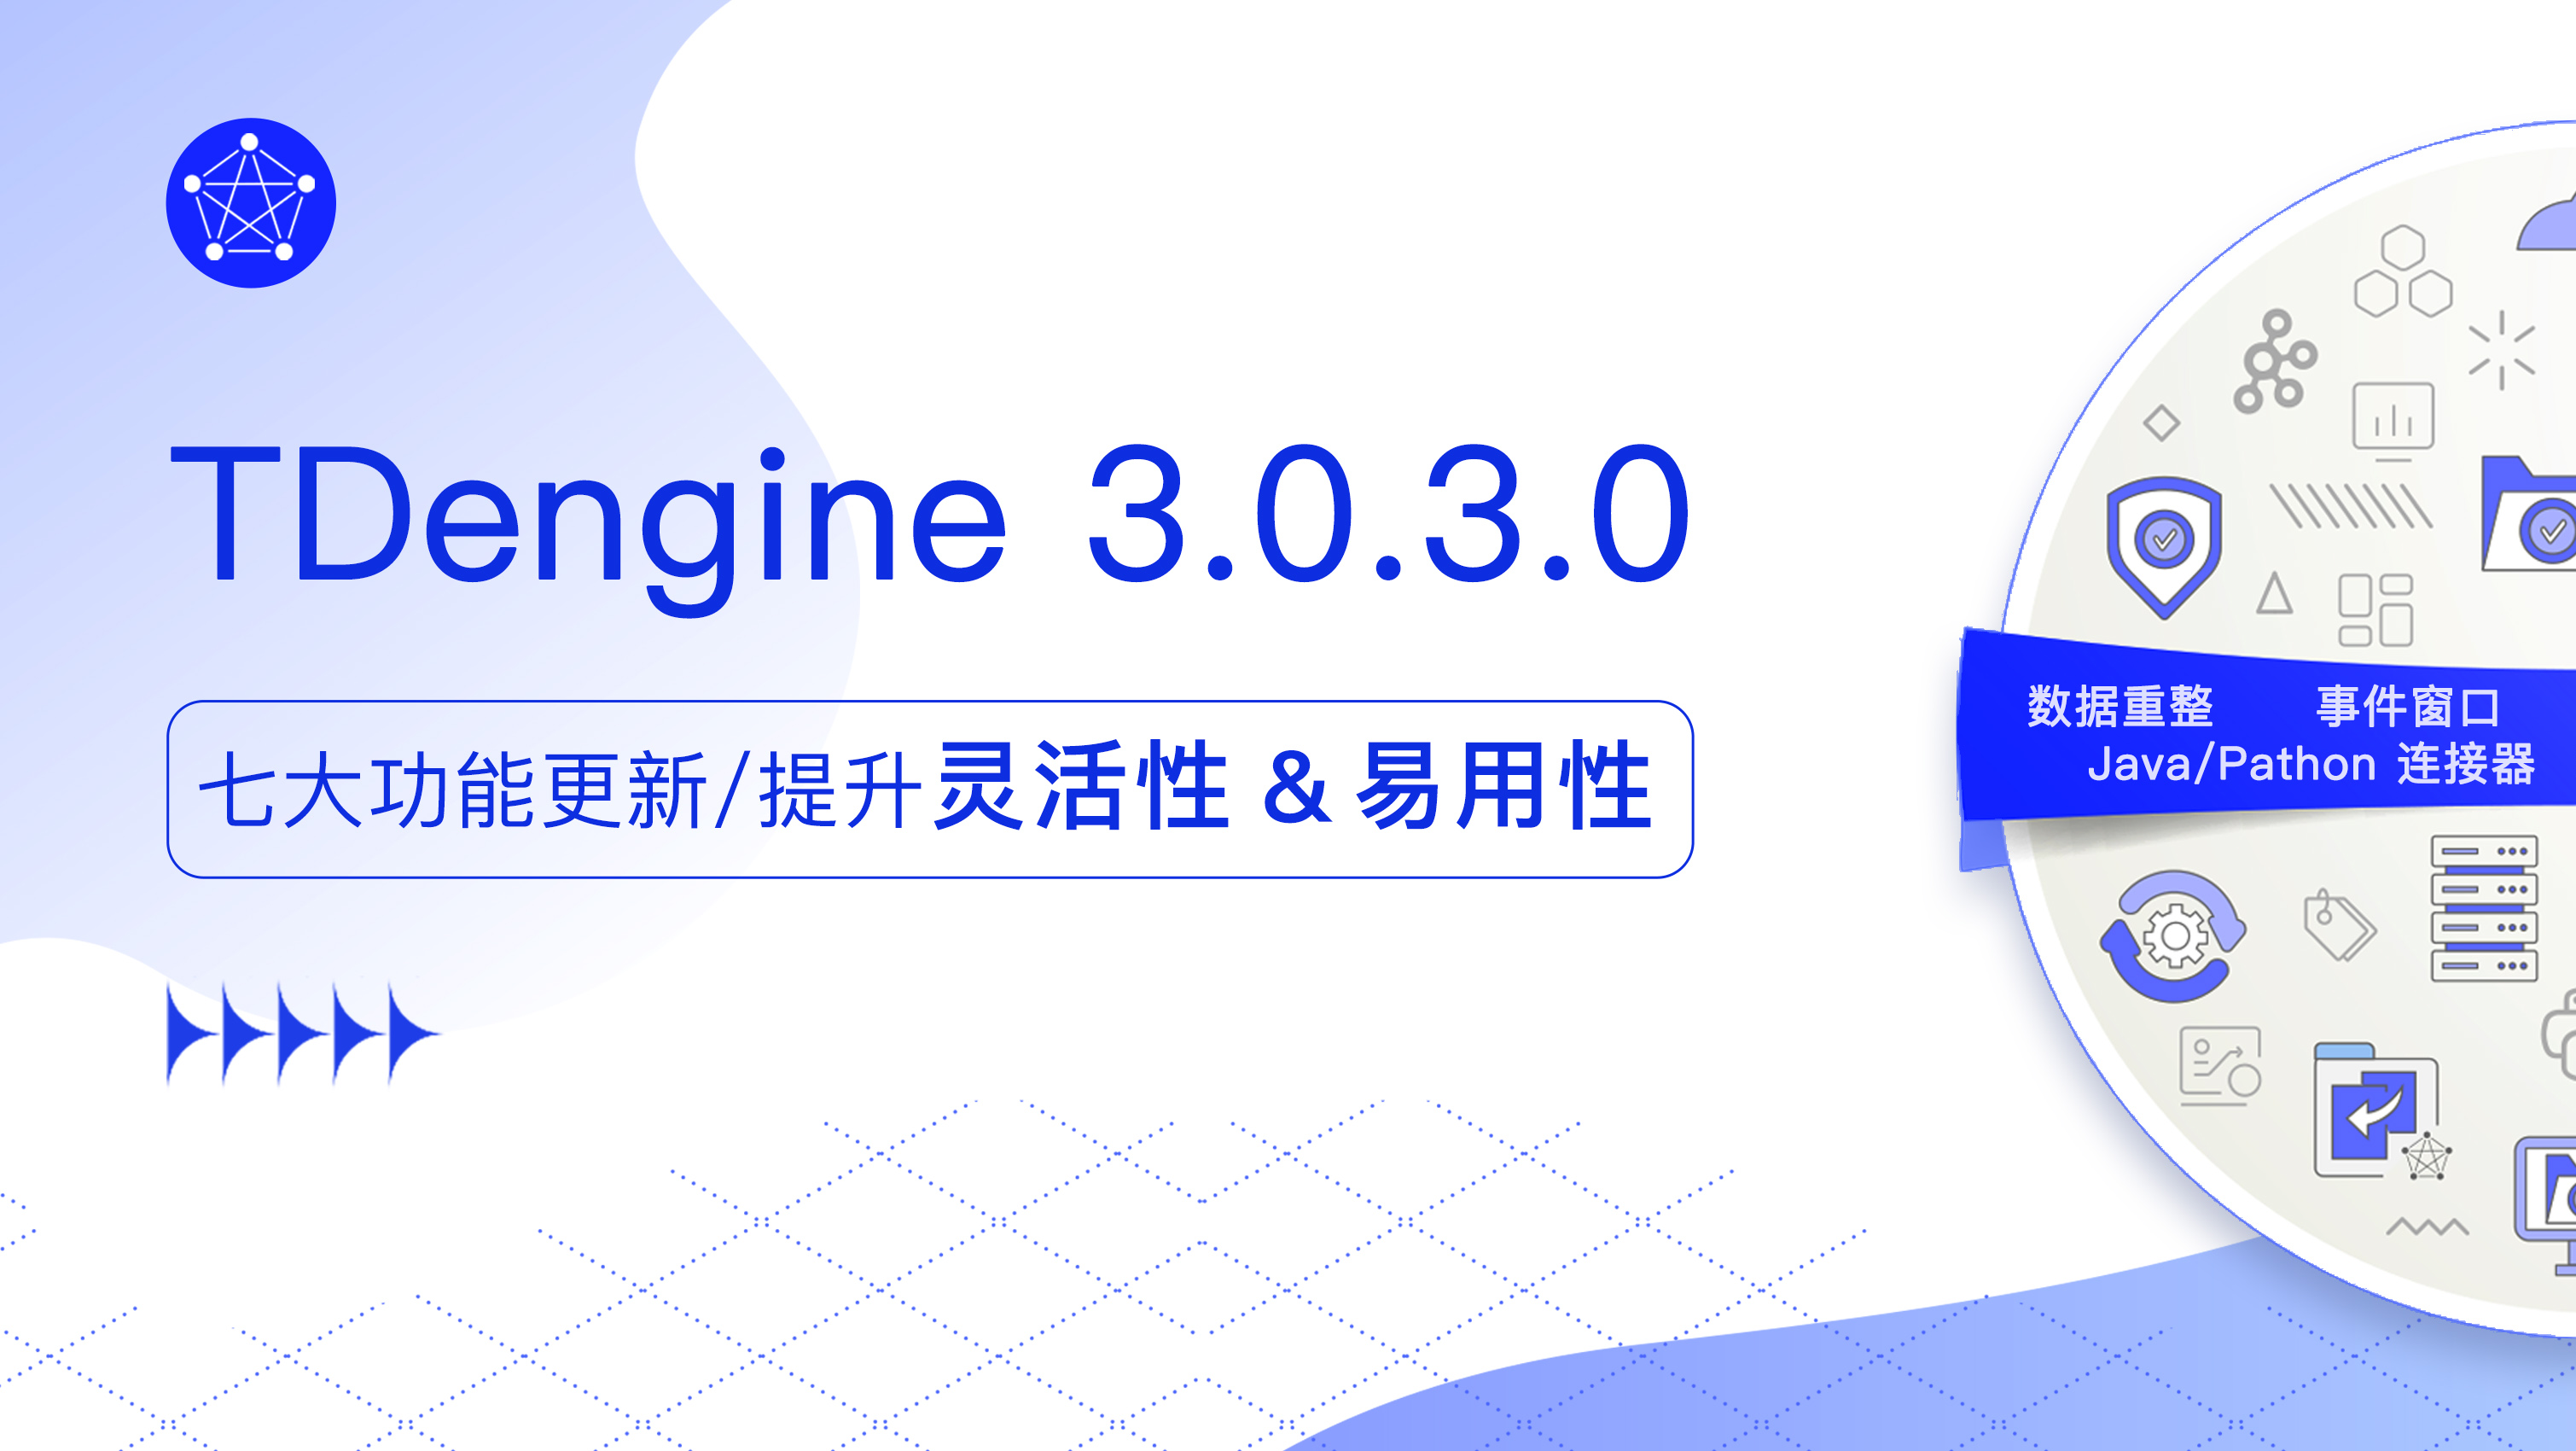 版本发布｜TDengine 3.0.3.0 为数据压缩、事件窗口等七大功能加“Buff”